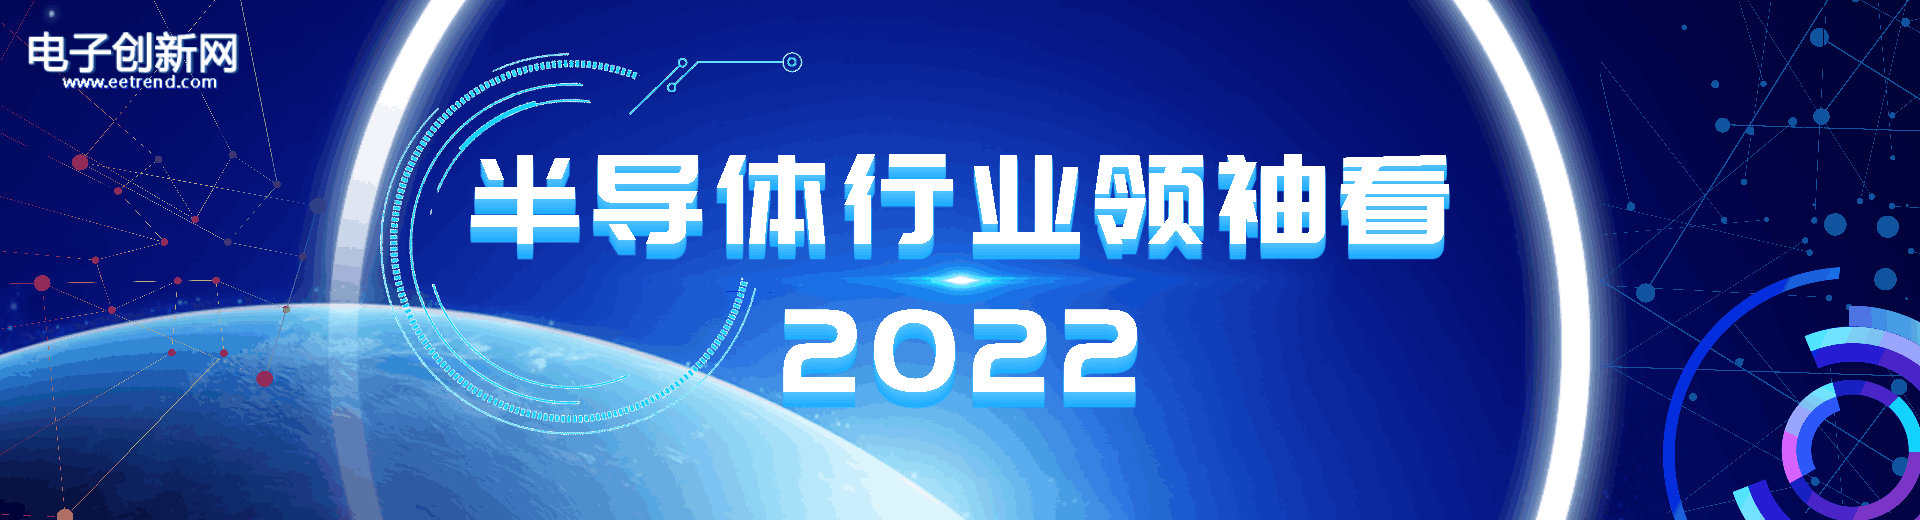 半导体行业领袖看2022”专题